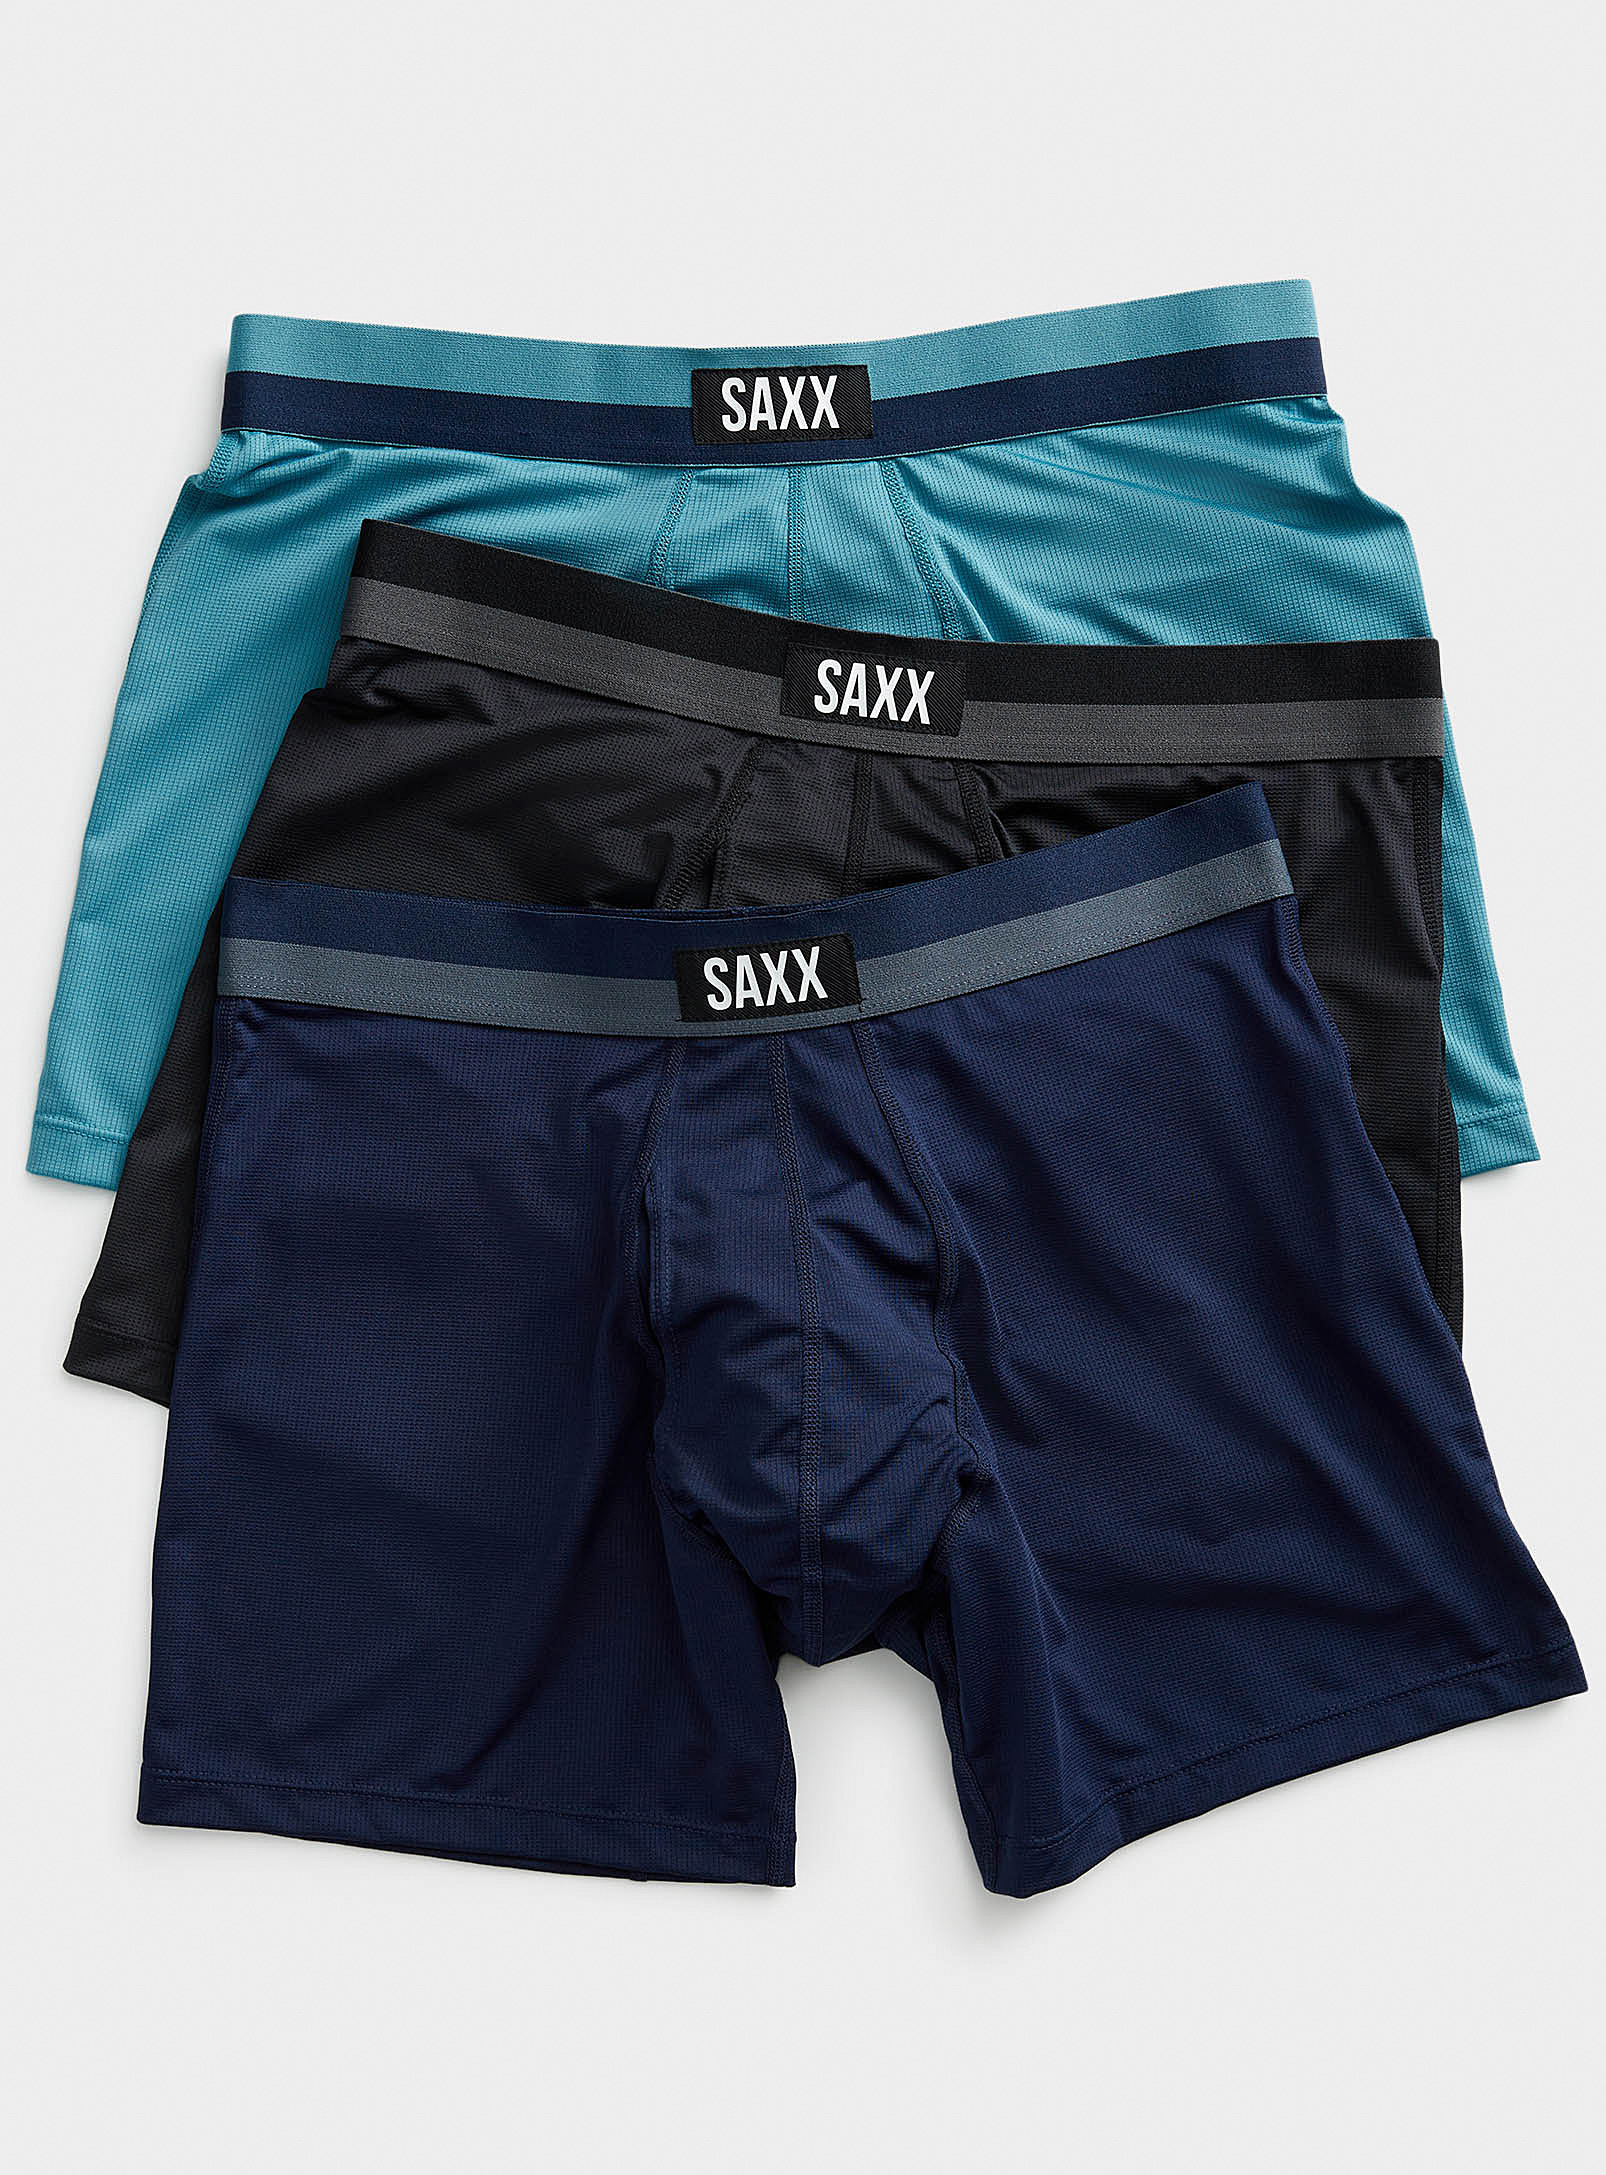 Saxx - Men's Lined waist boxer briefs SPORT MESH 3-pack